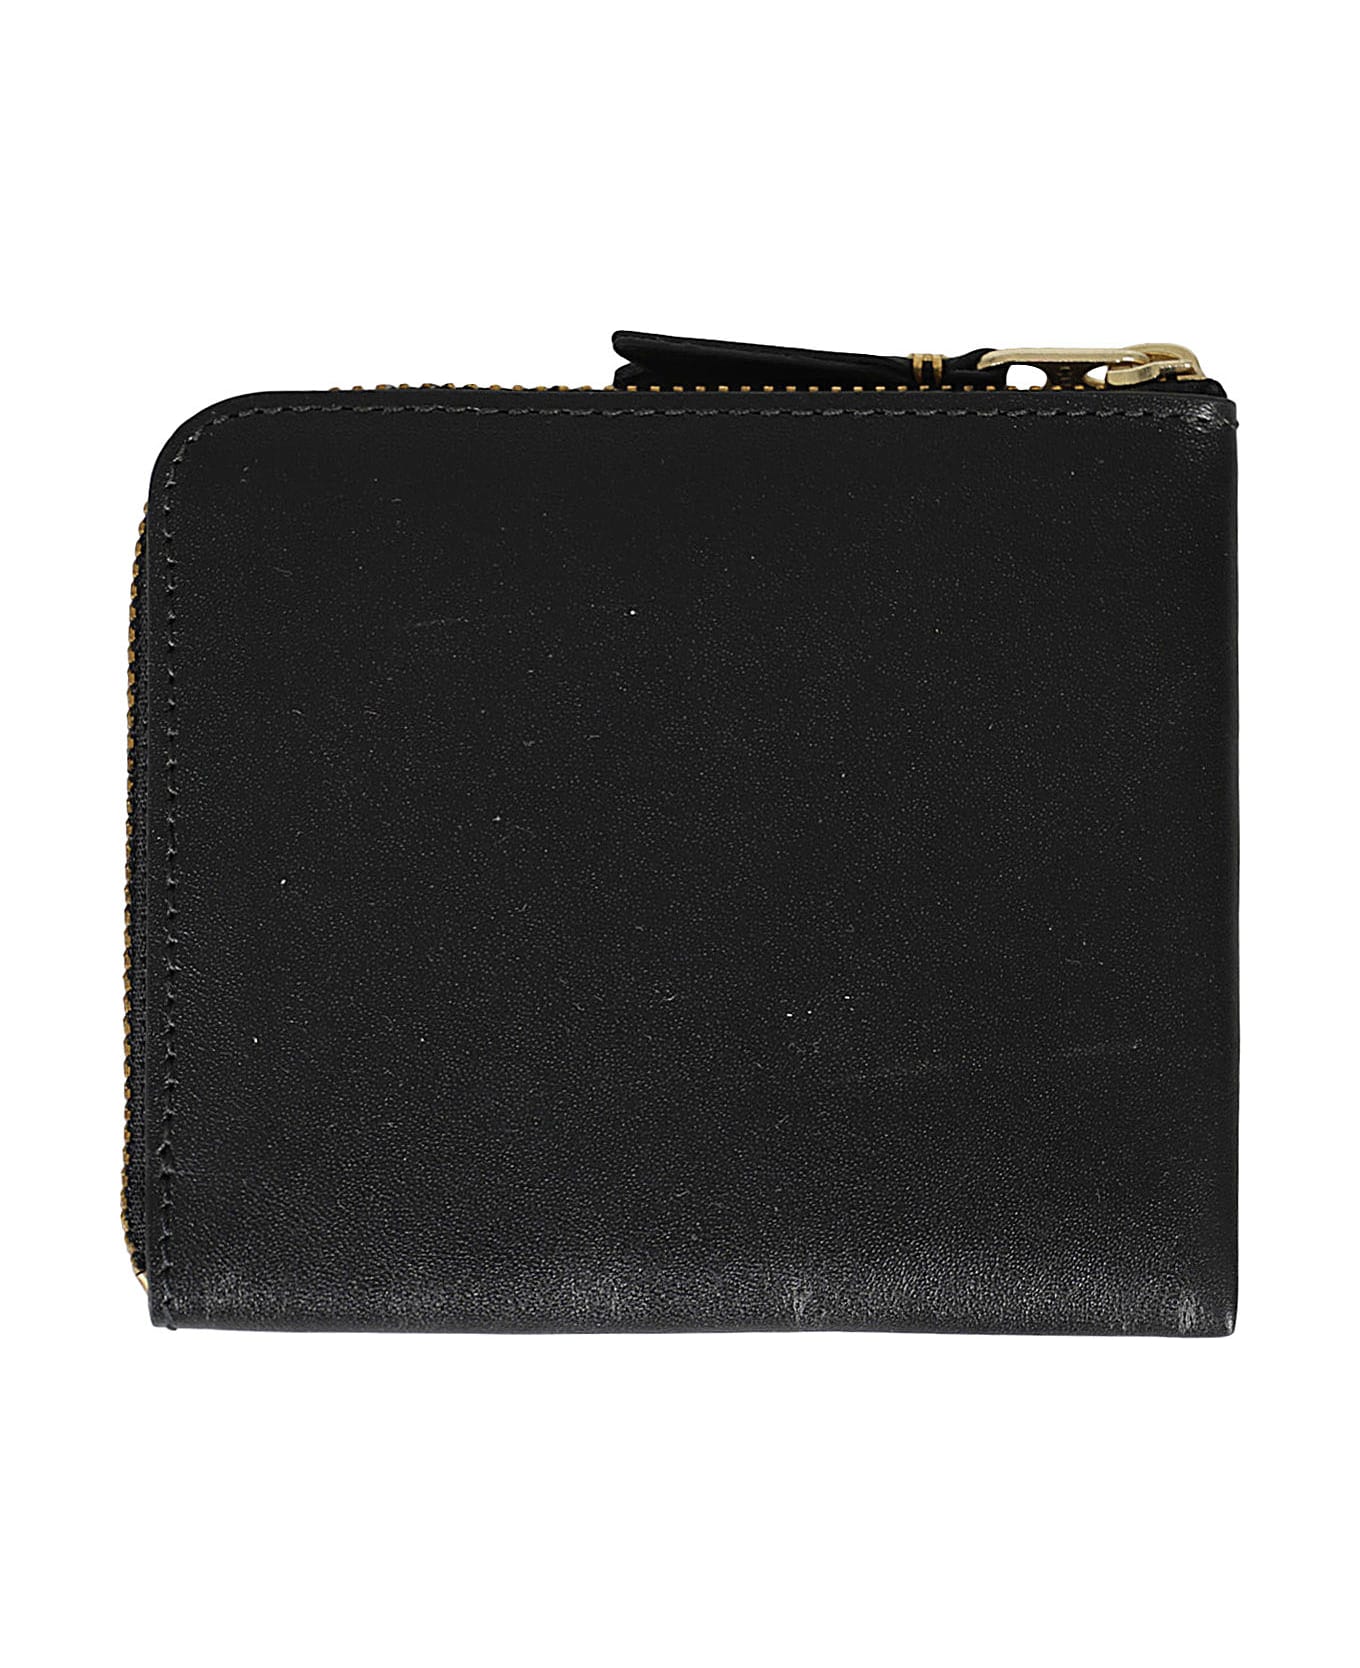 Comme des Garçons Wallet Classic Line - Black 財布